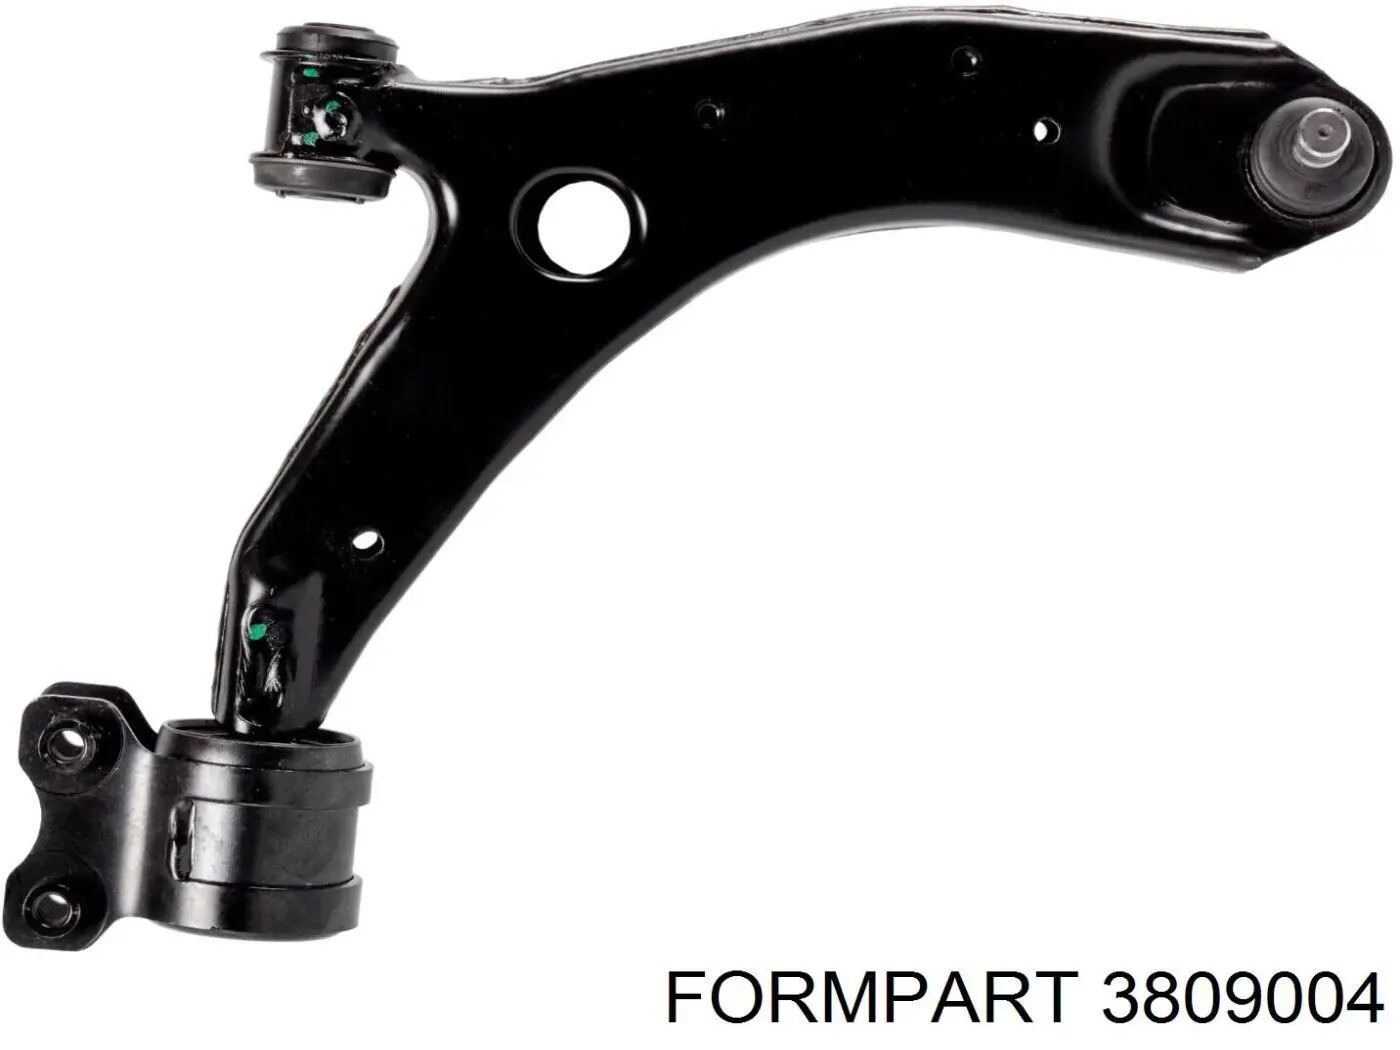 3809004 Formpart/Otoform рычаг передней подвески нижний правый